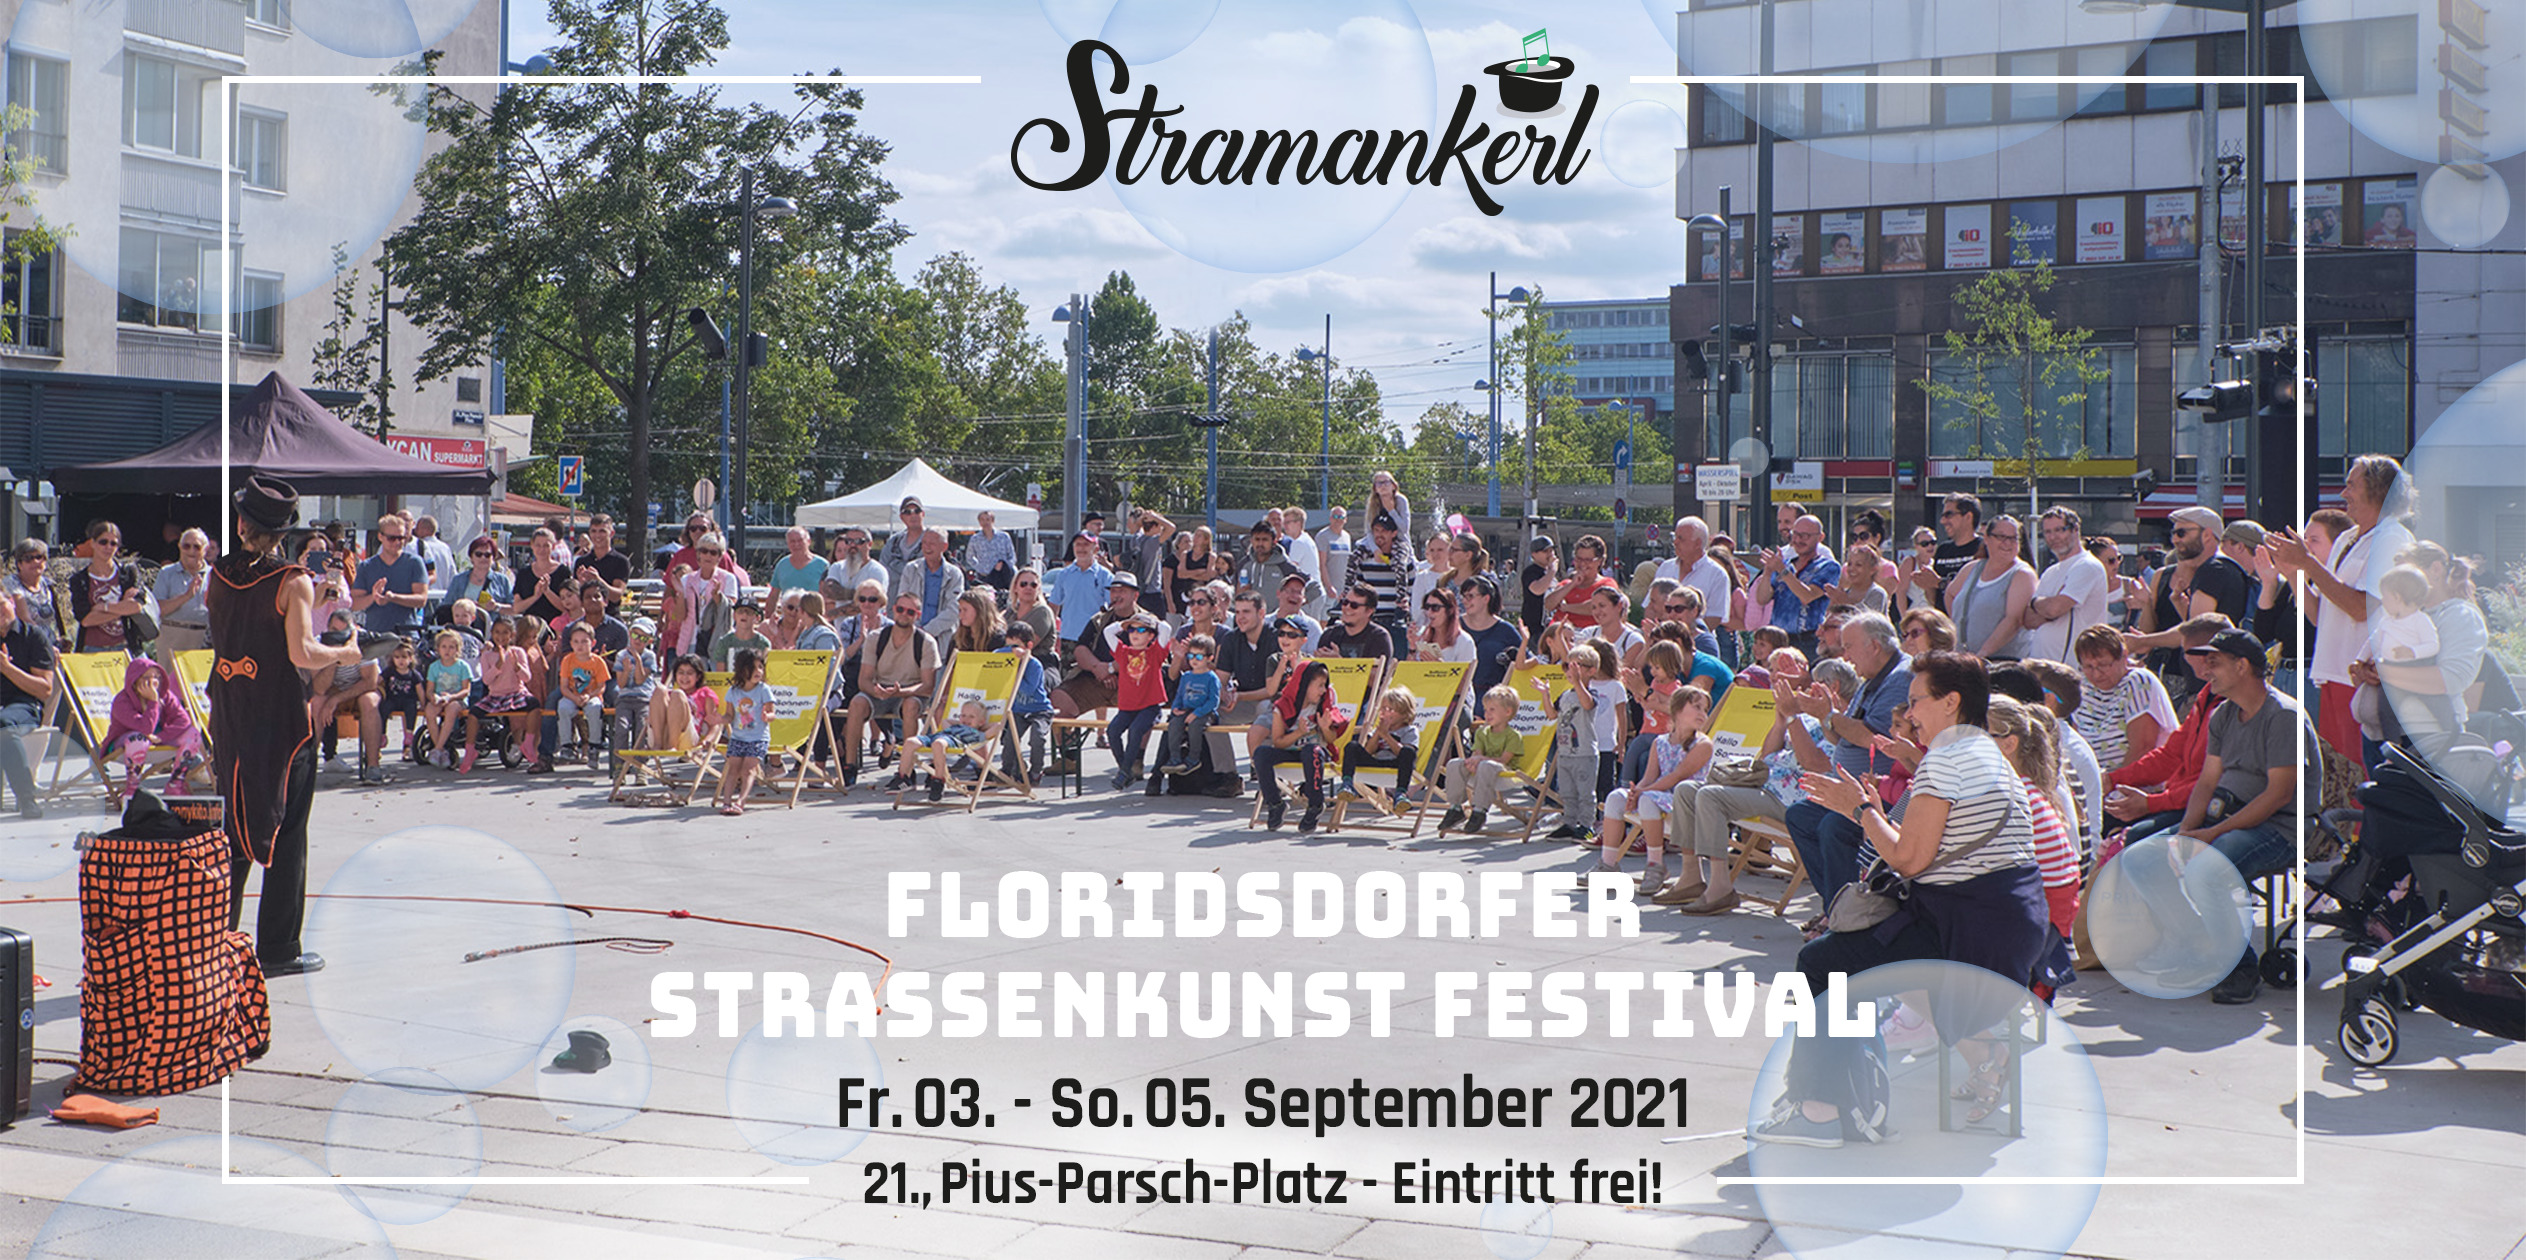 Stramankerl - Straßenkunst Festival